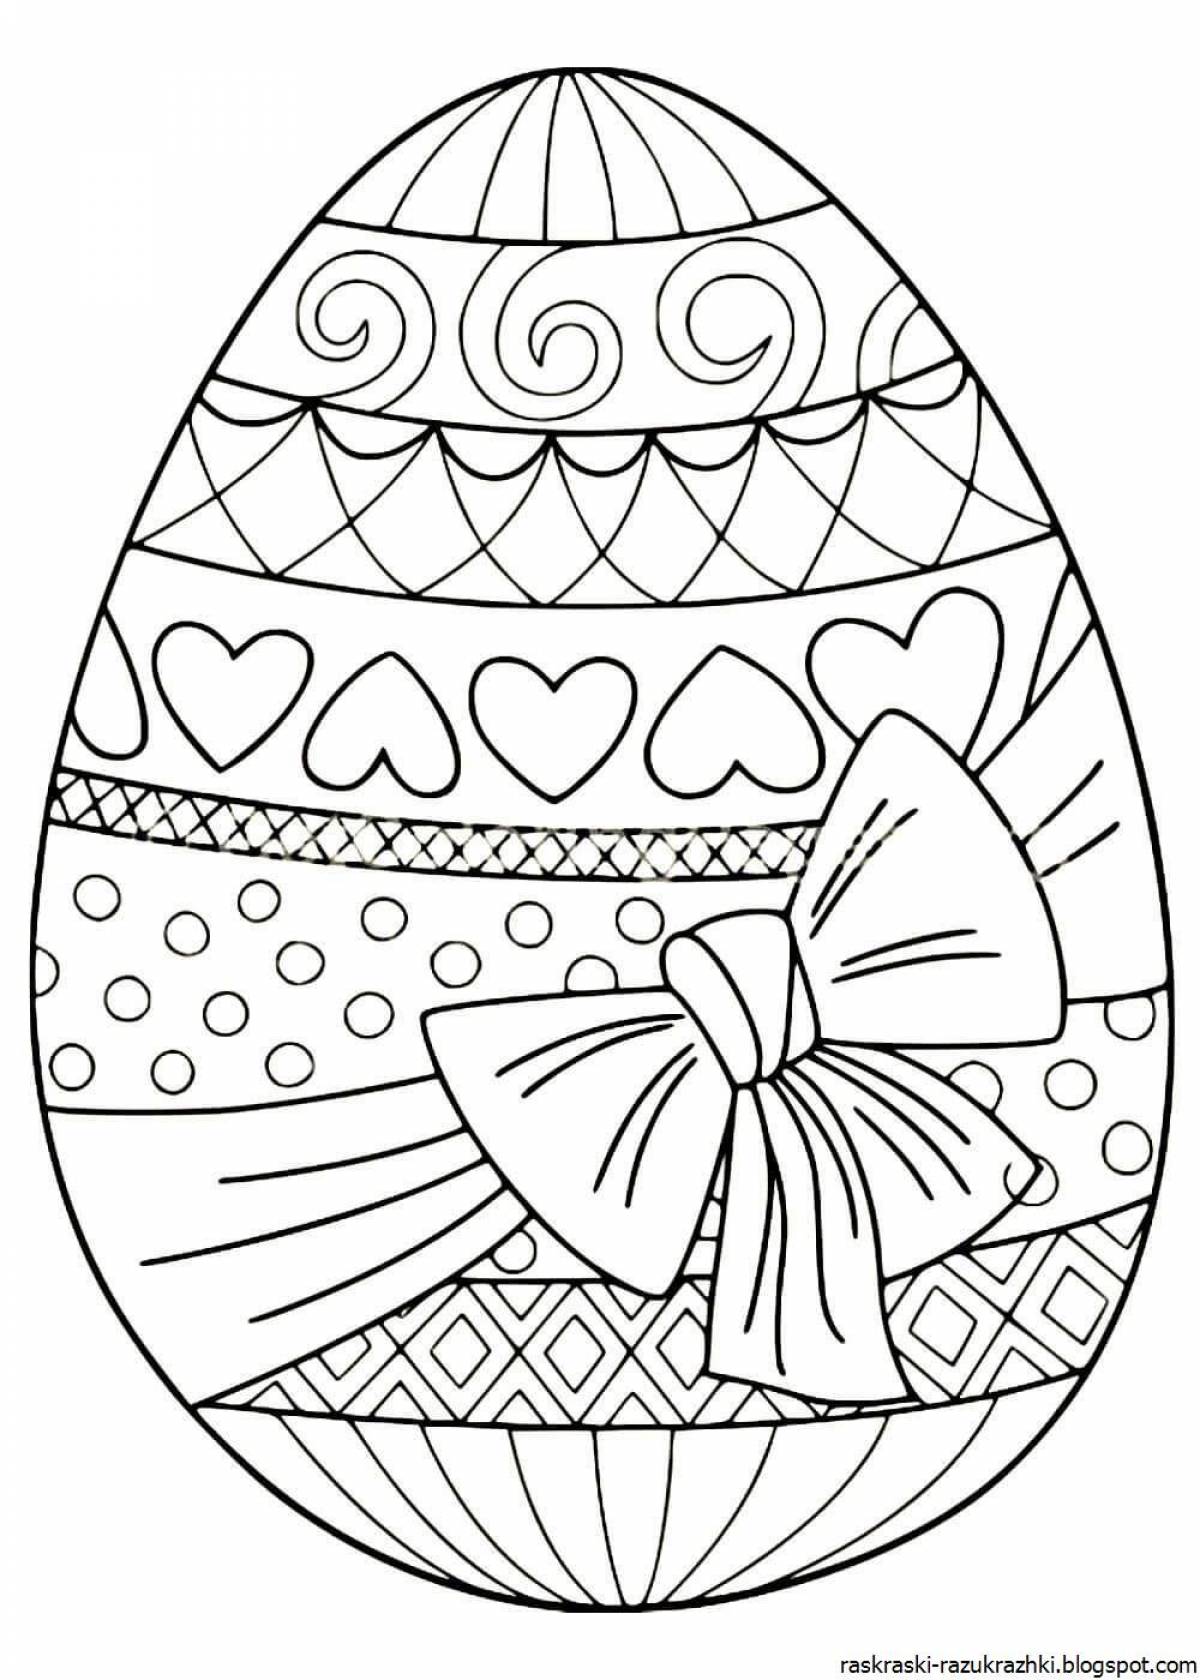 Распечатать раскраску яйца. Пасхальное яйцо раскраска. Раскраски пасхальные для детей. Пасхальное яйцо раскраска для детей. Пасхальные яйца для раскрашивания.